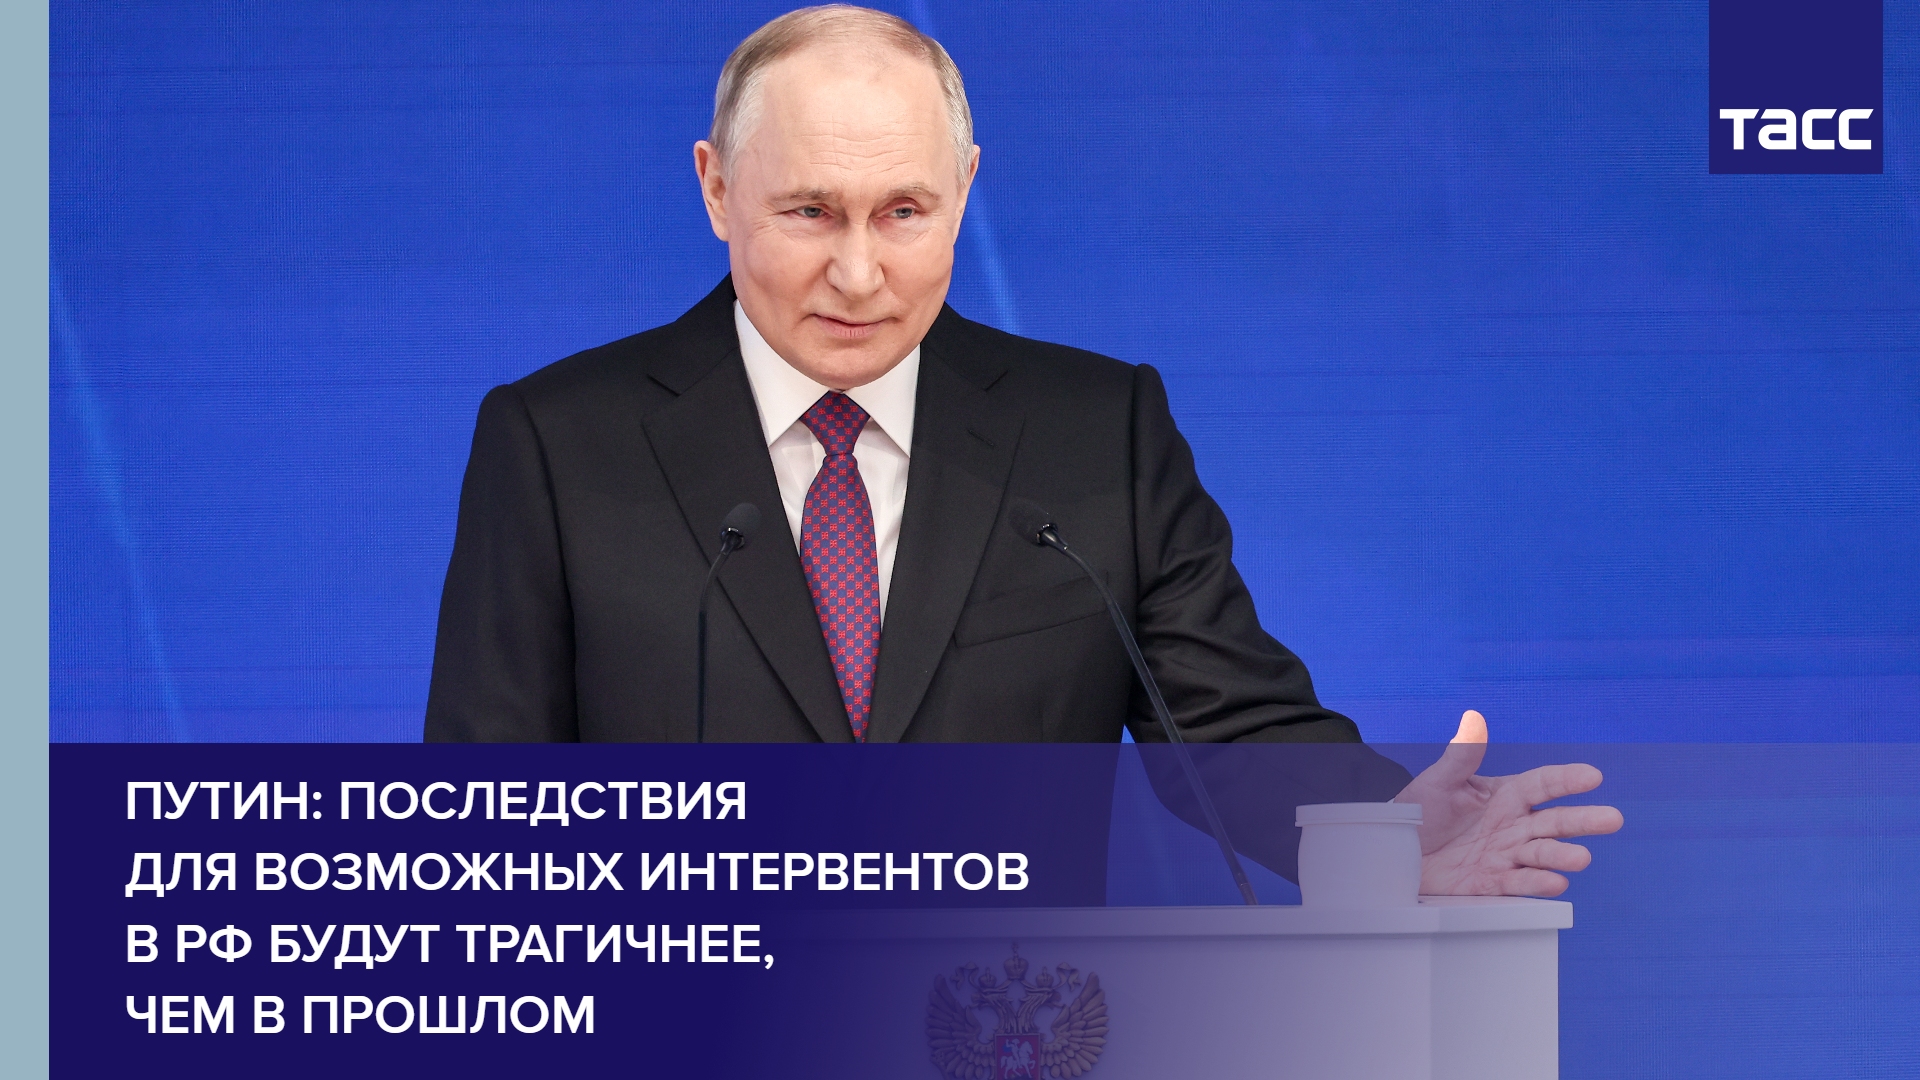 Путин: последствия для возможных интервентов в РФ будут трагичнее, чем в прошлом